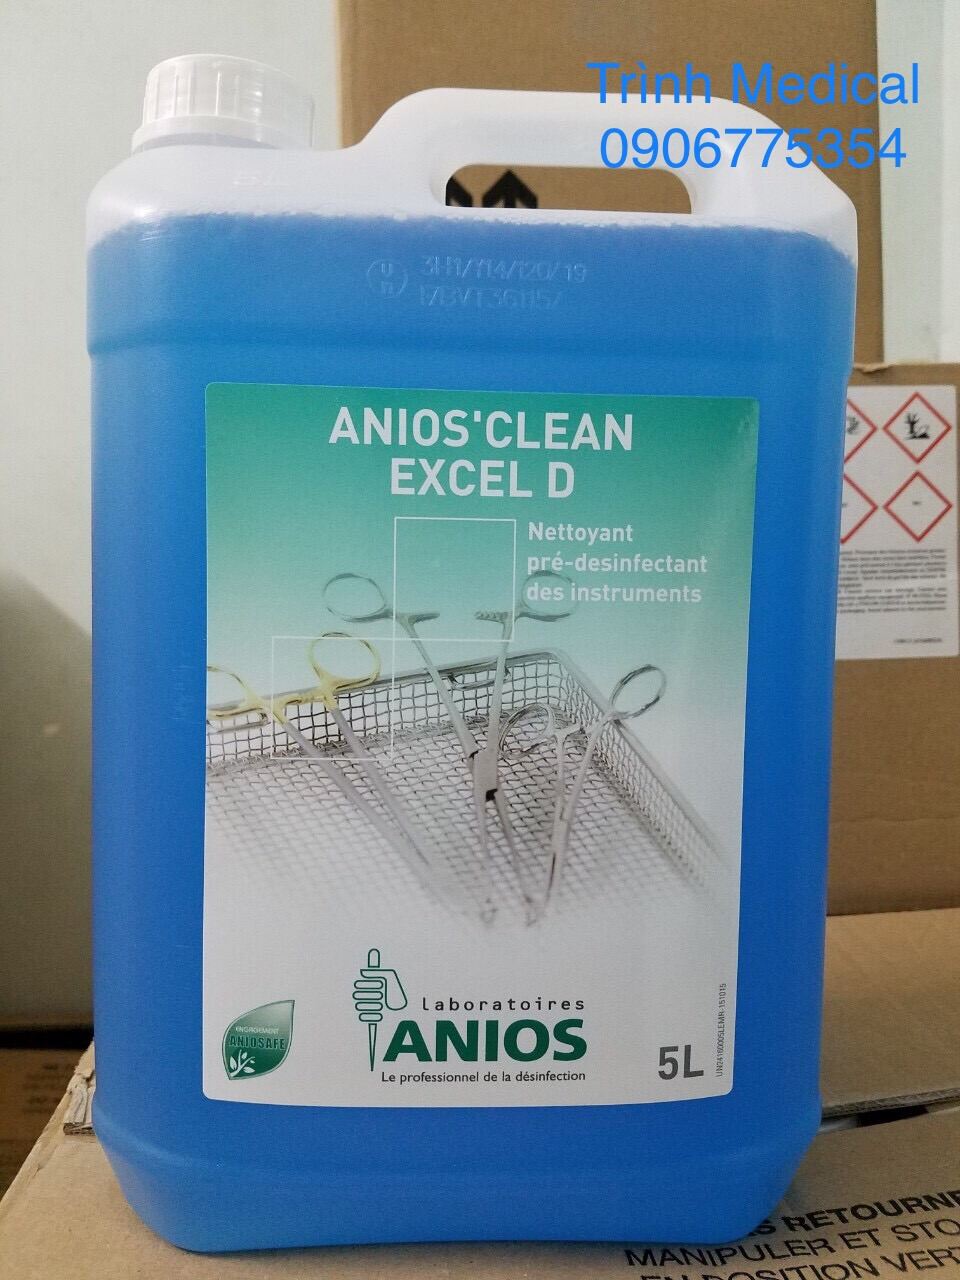 ANIOS'CLEAN EXCEL D